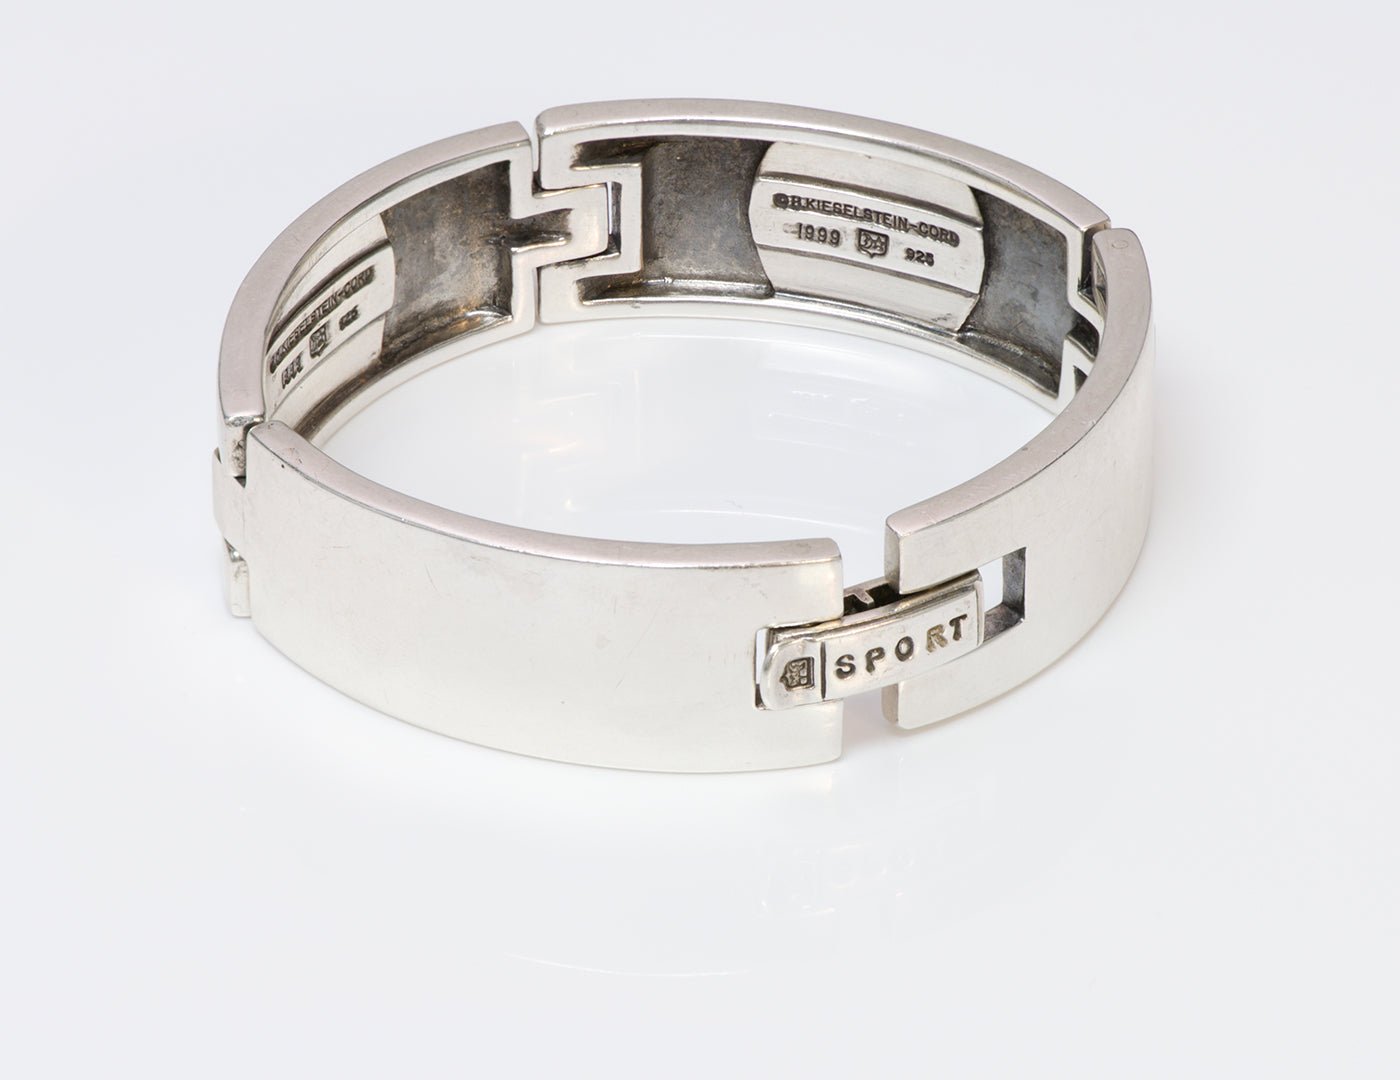 Barry Kieselstein Cord Sport Sterling Silver Bracelet